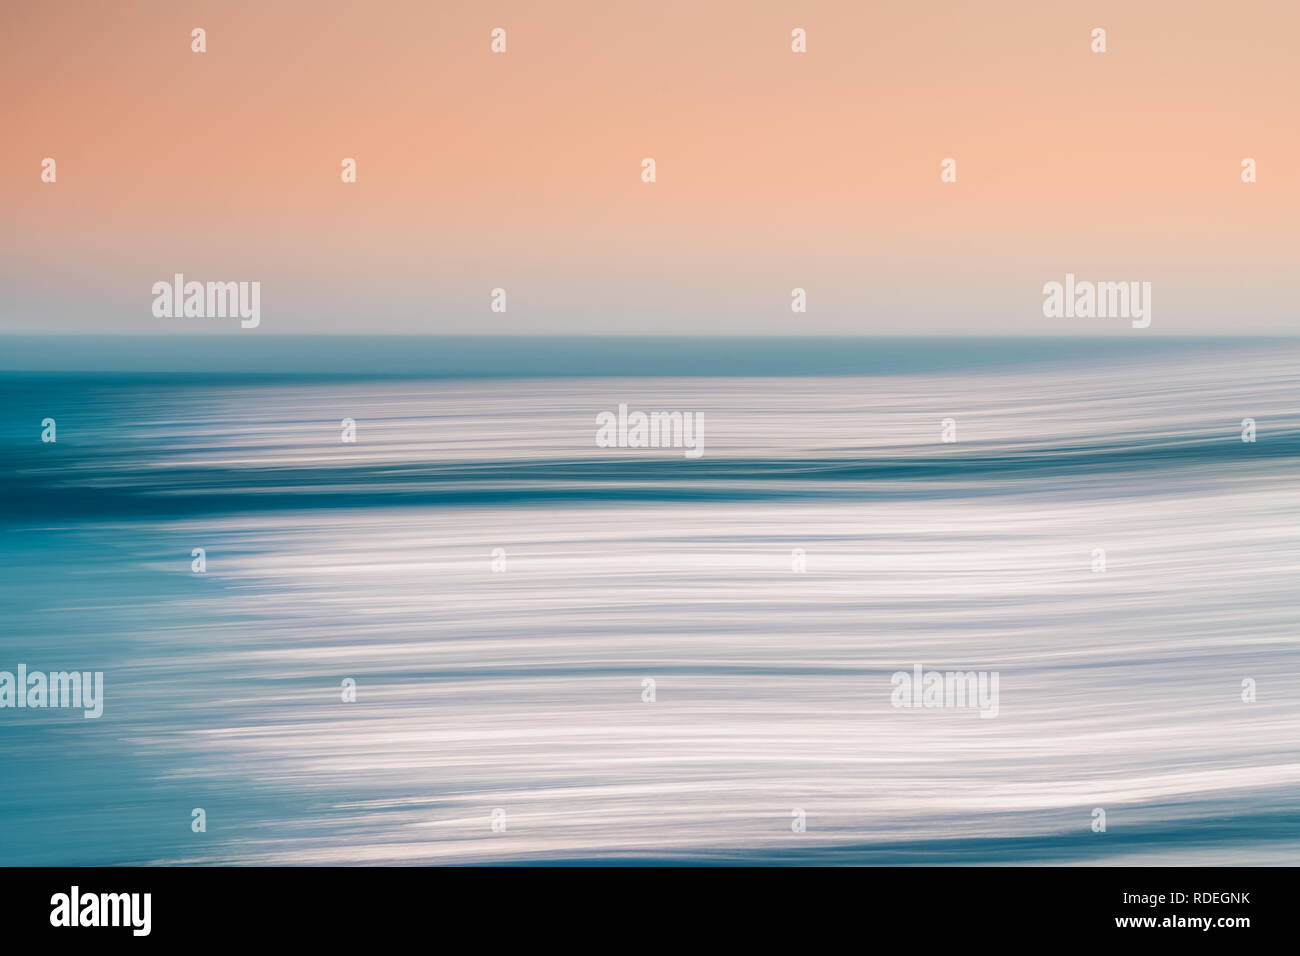 Résumé du paysage marin. Un résumé avec le panoramique Océan seascape floue de mouvement. Image affiche une lumière bleu et ocre rose split de couleurs. Banque D'Images